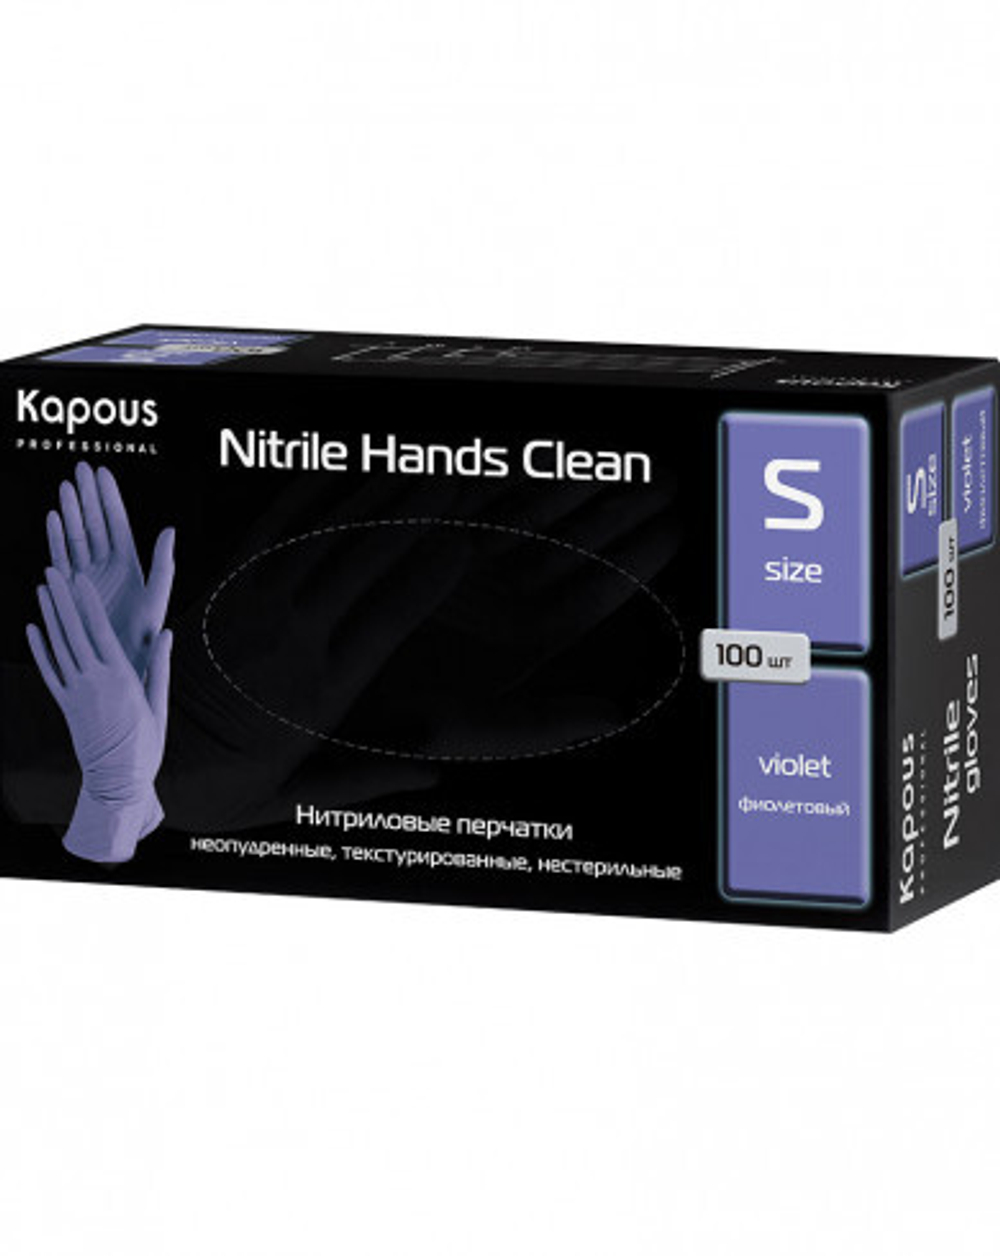 Kapous Professional Перчатки нитриловые Nitrile Hands Clean, неопудренные, текстурированные, нестерильные, Фиолетовый, S, 100 шт